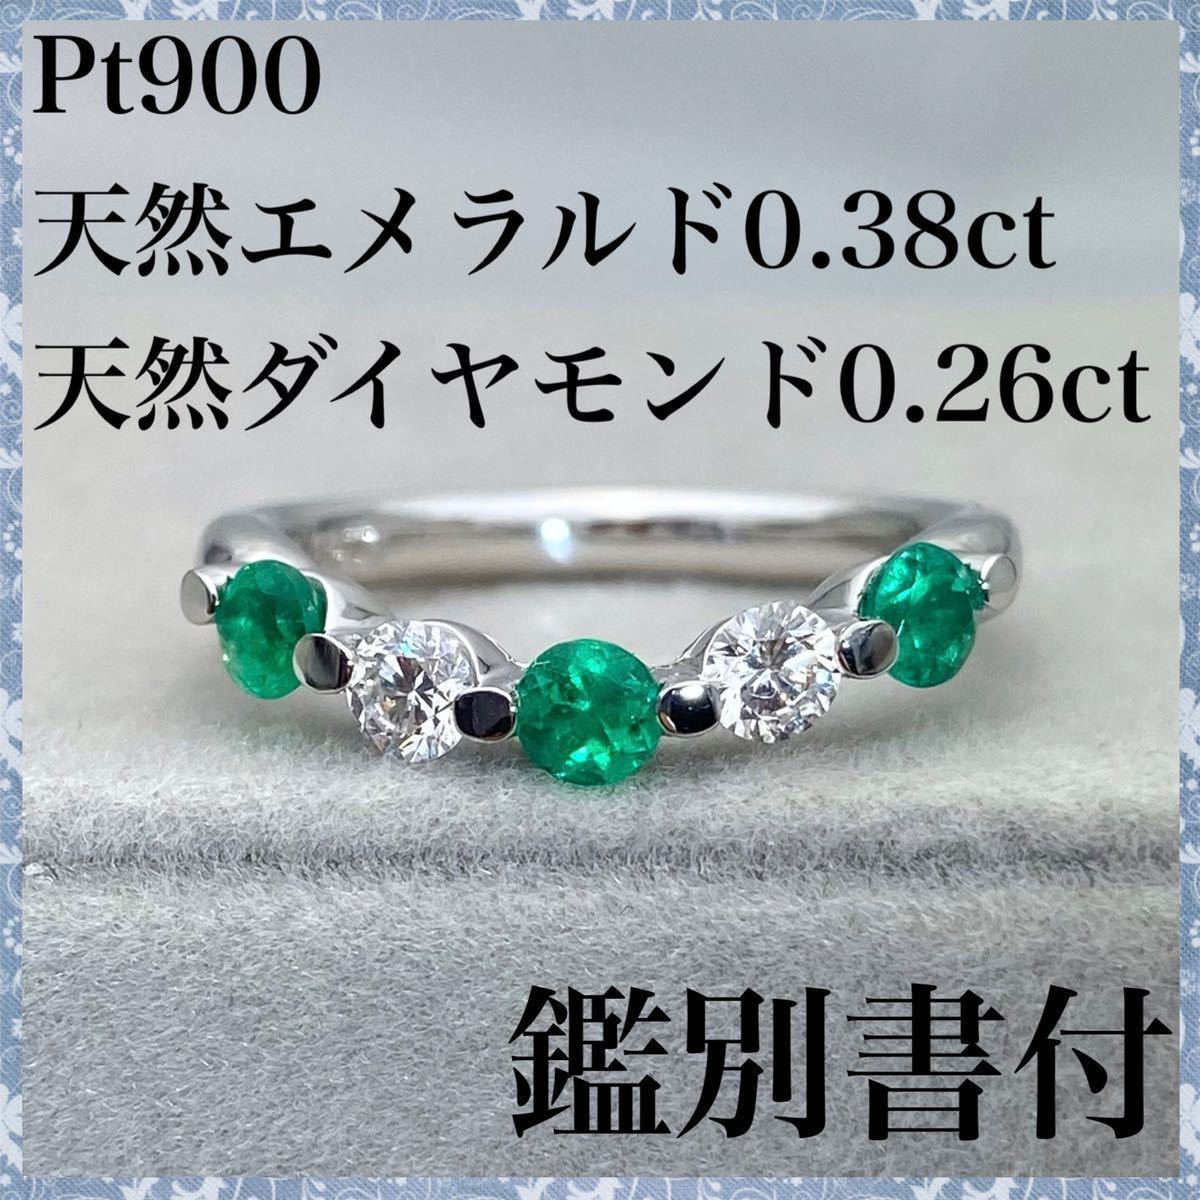 23952円 最安値級価格 PT900 2連デザインが美しい ダイヤモンド 0.38ct リング